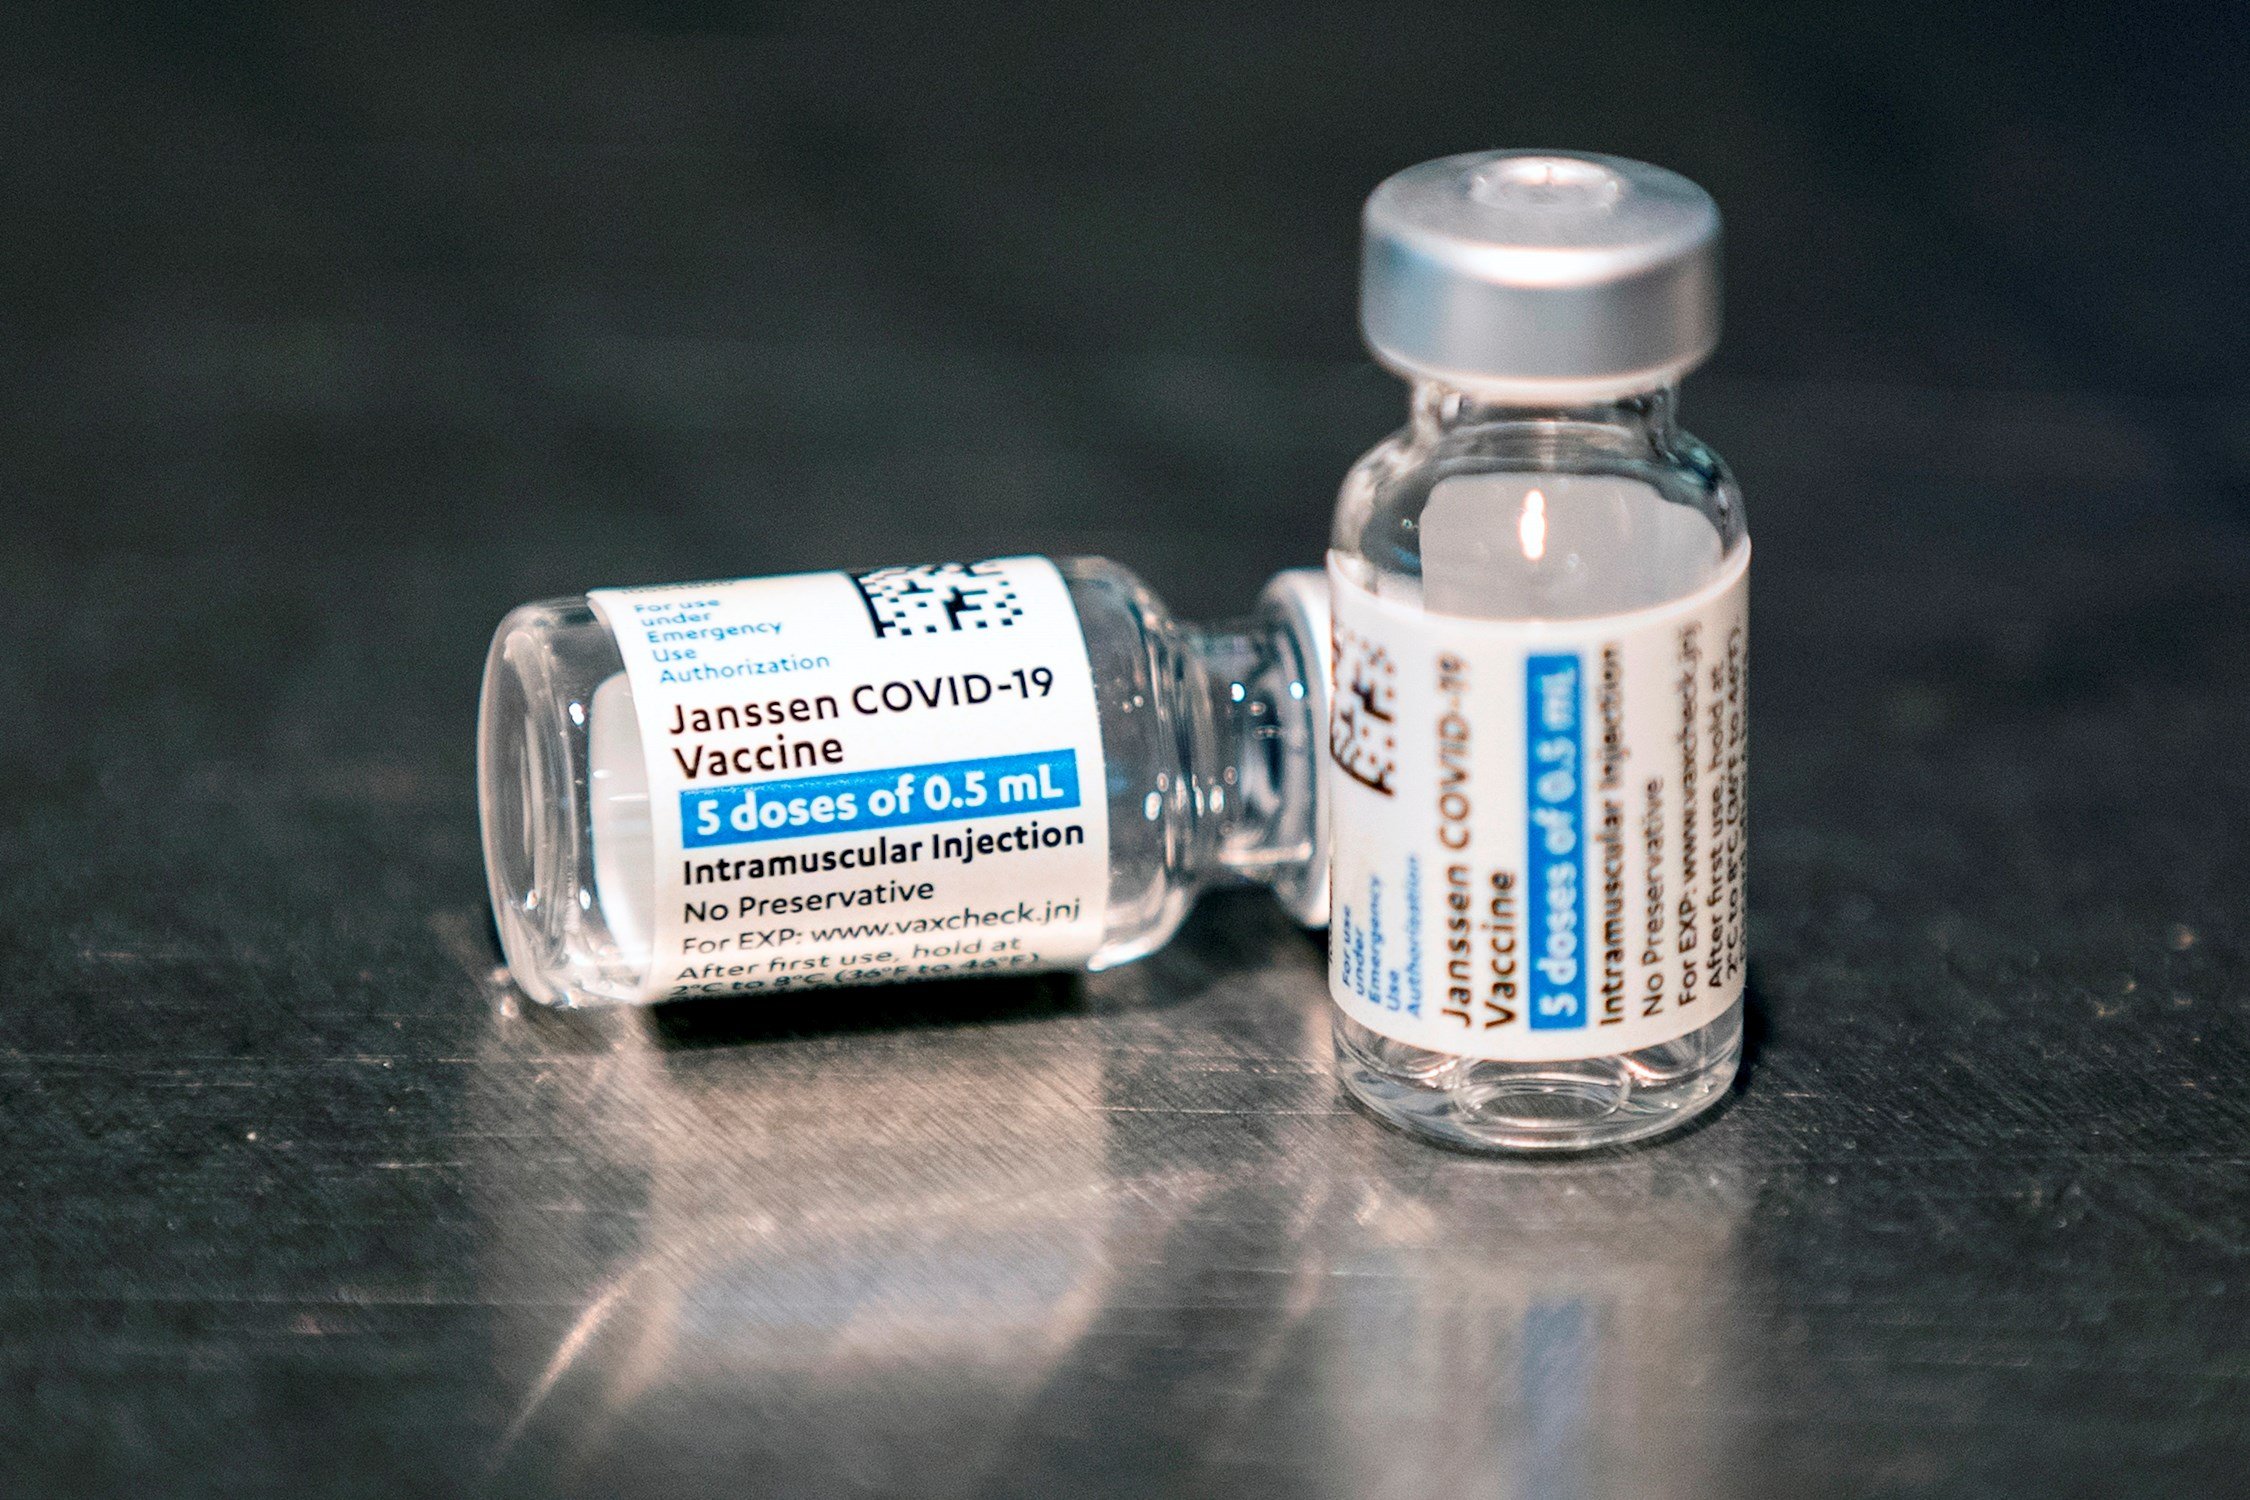 Tres personas mueren en los EE.UU. después de recibir la vacuna de Janssen